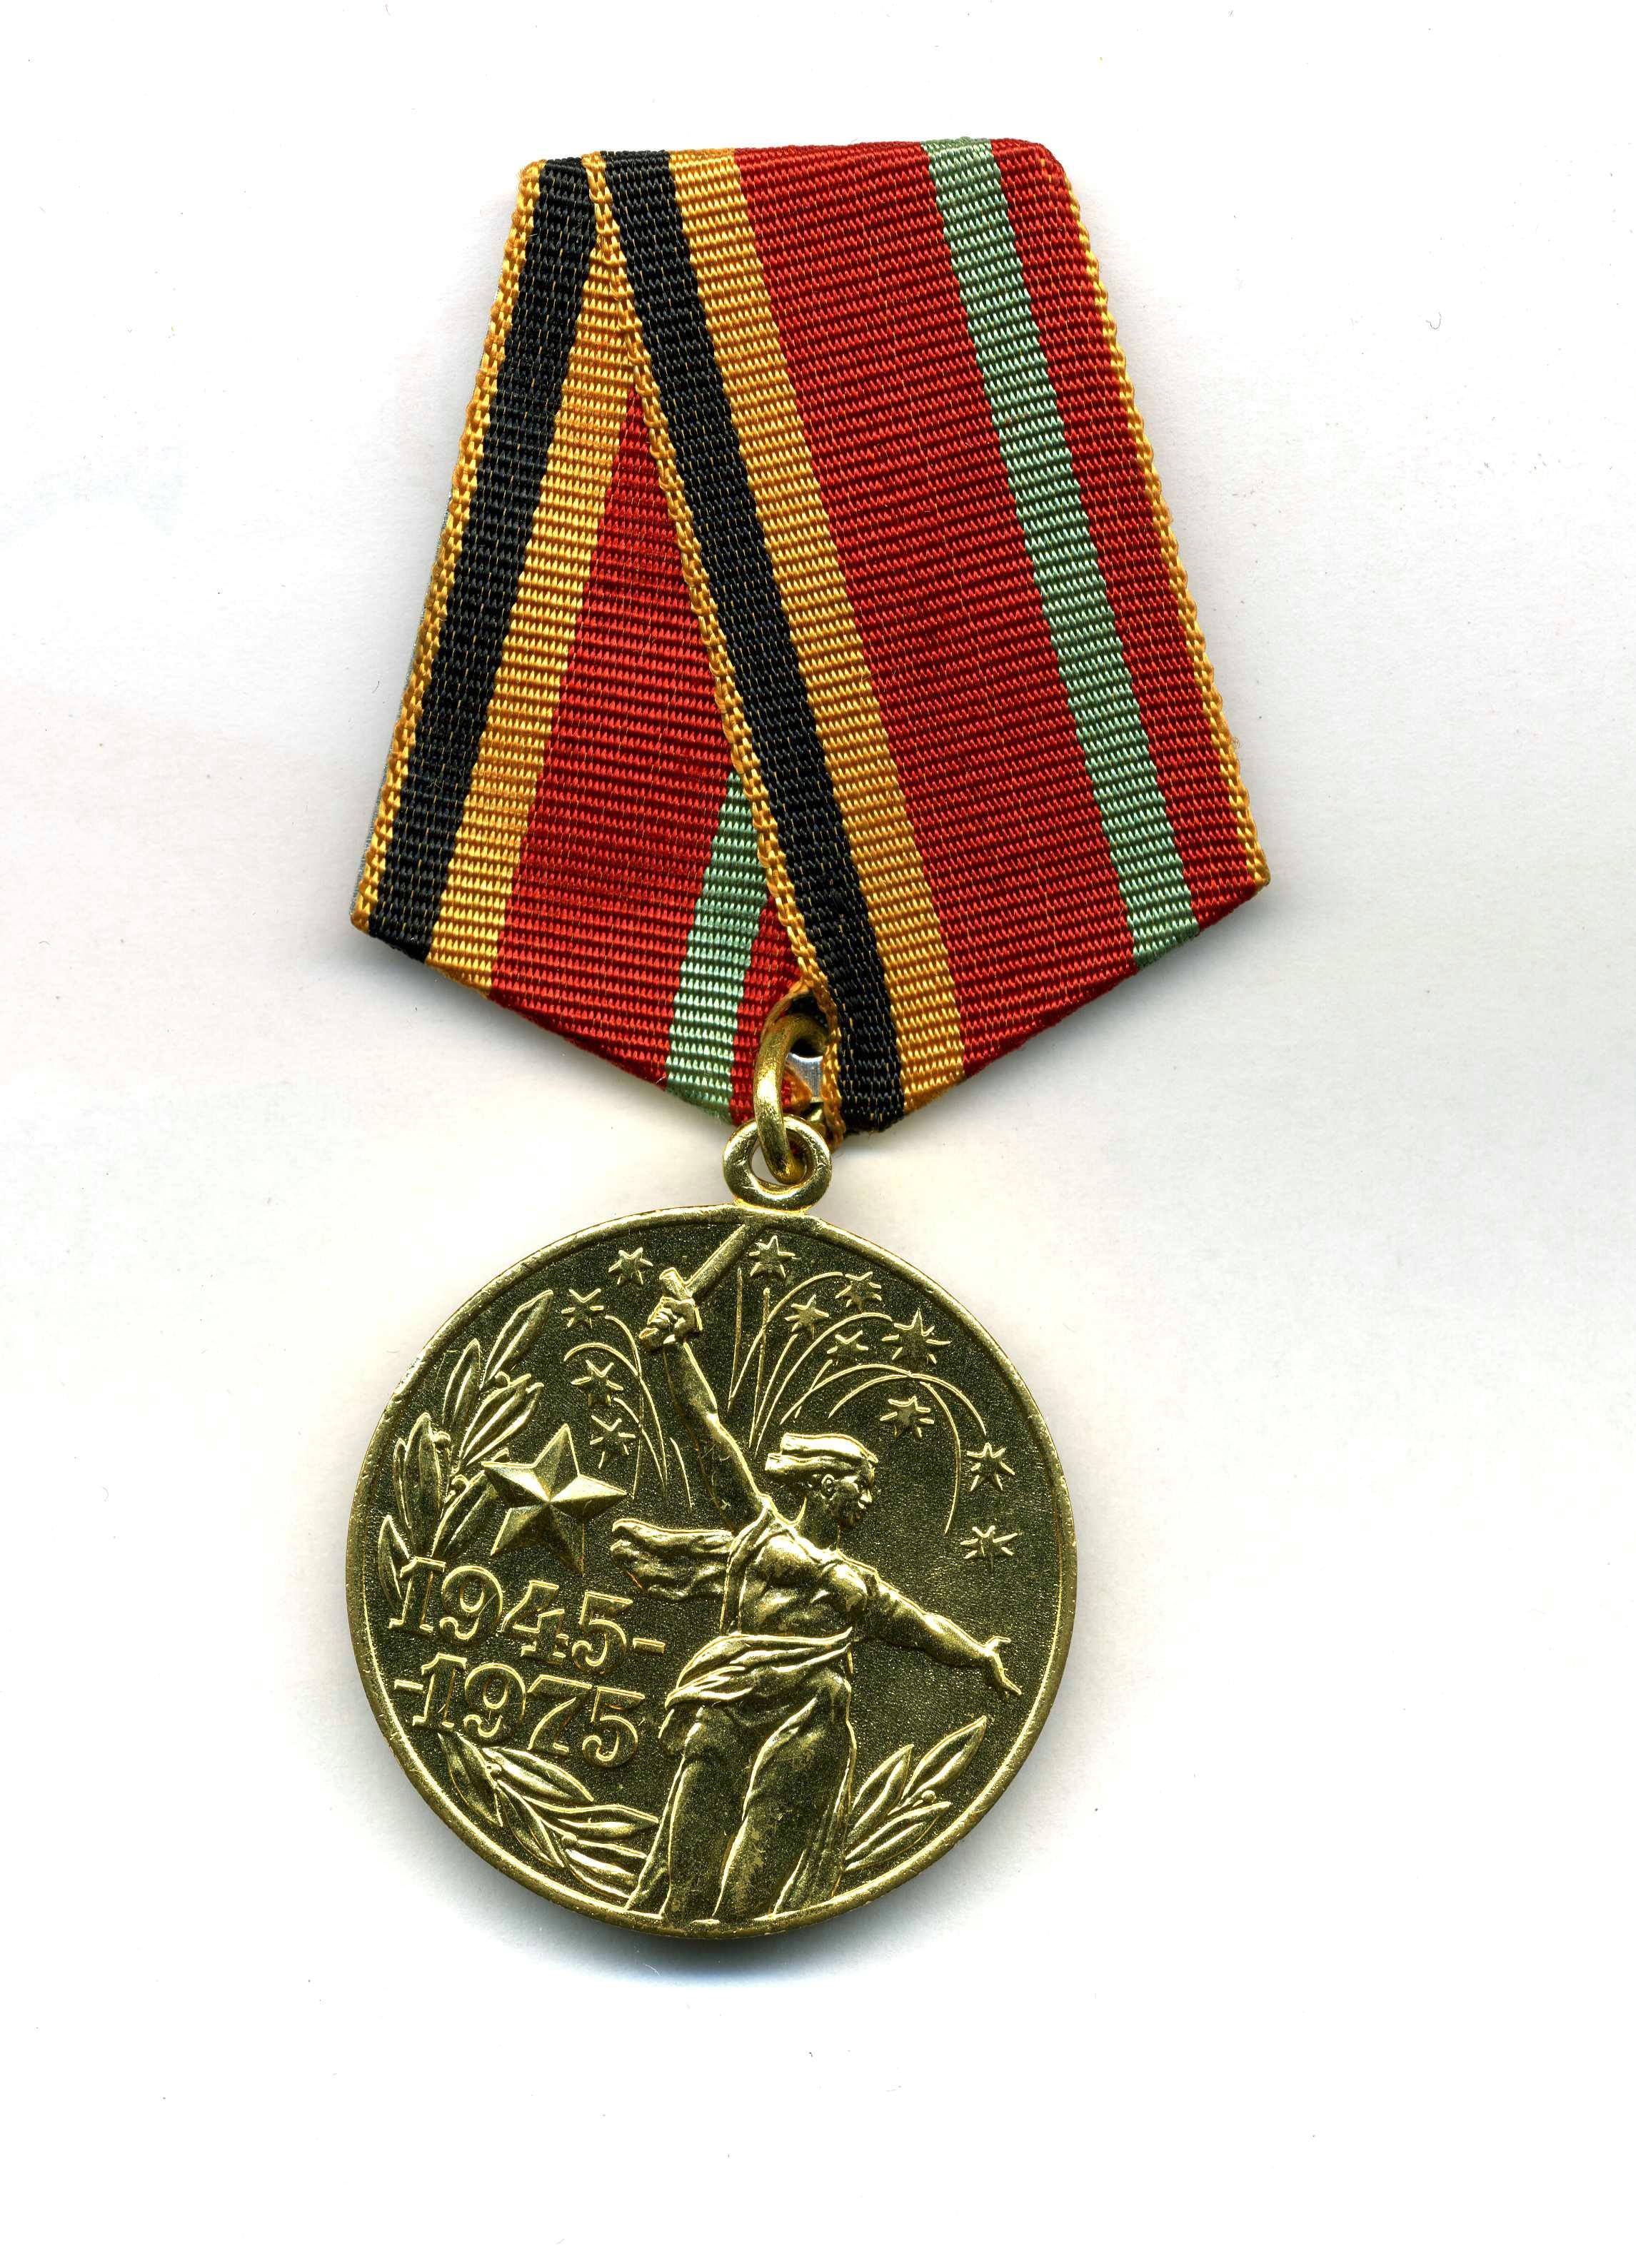 Орден 1945 года. Медали Великой Отечественной войны 1941-1945. Юбилейные медали Великой Отечественной войны 1941-1945. Медаль участника ВОВ 1941-1945.